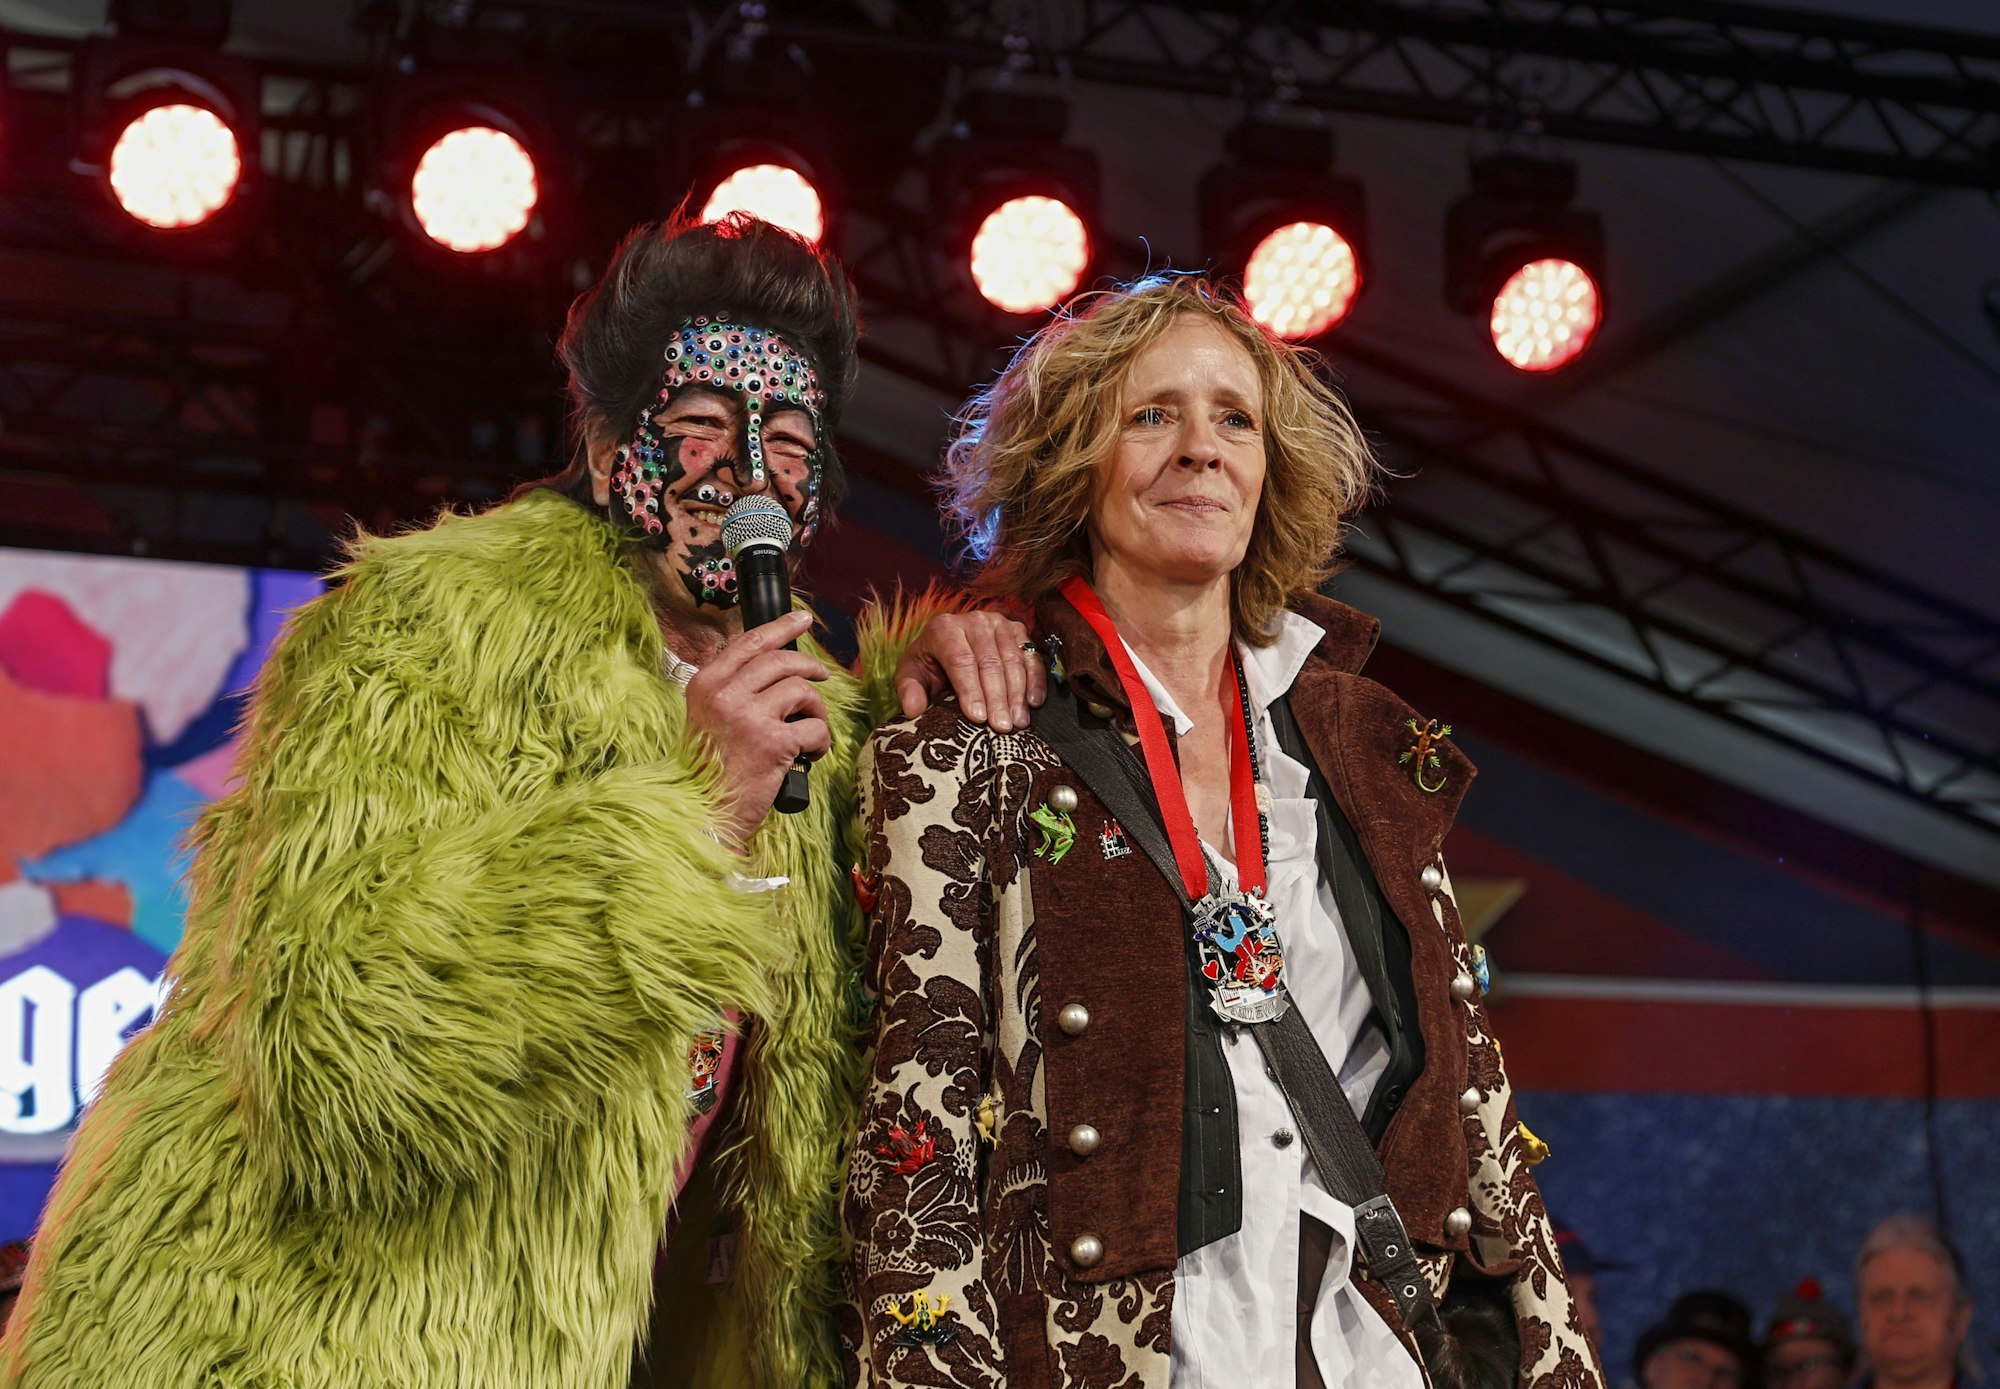 Isabella Neven DuMont und Christian DuMont Schütte stehen dicht nebeneinander im Kostüm auf der Bühne.